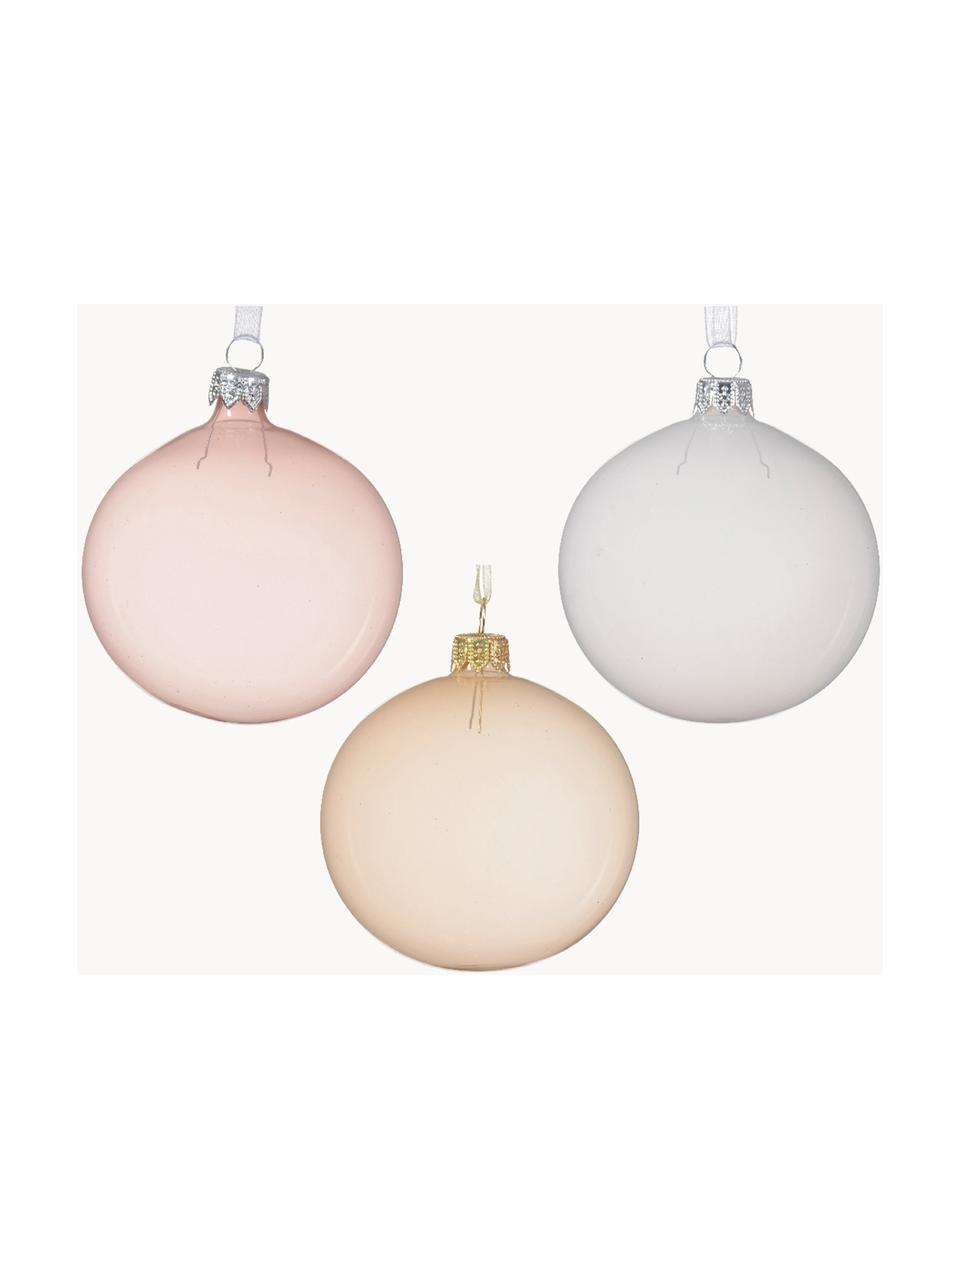 Weihnachtskugeln Shades, 6er-Set, Glas, Hellrosa, Weiß, Hellbeige, transparent, Ø 8 cm